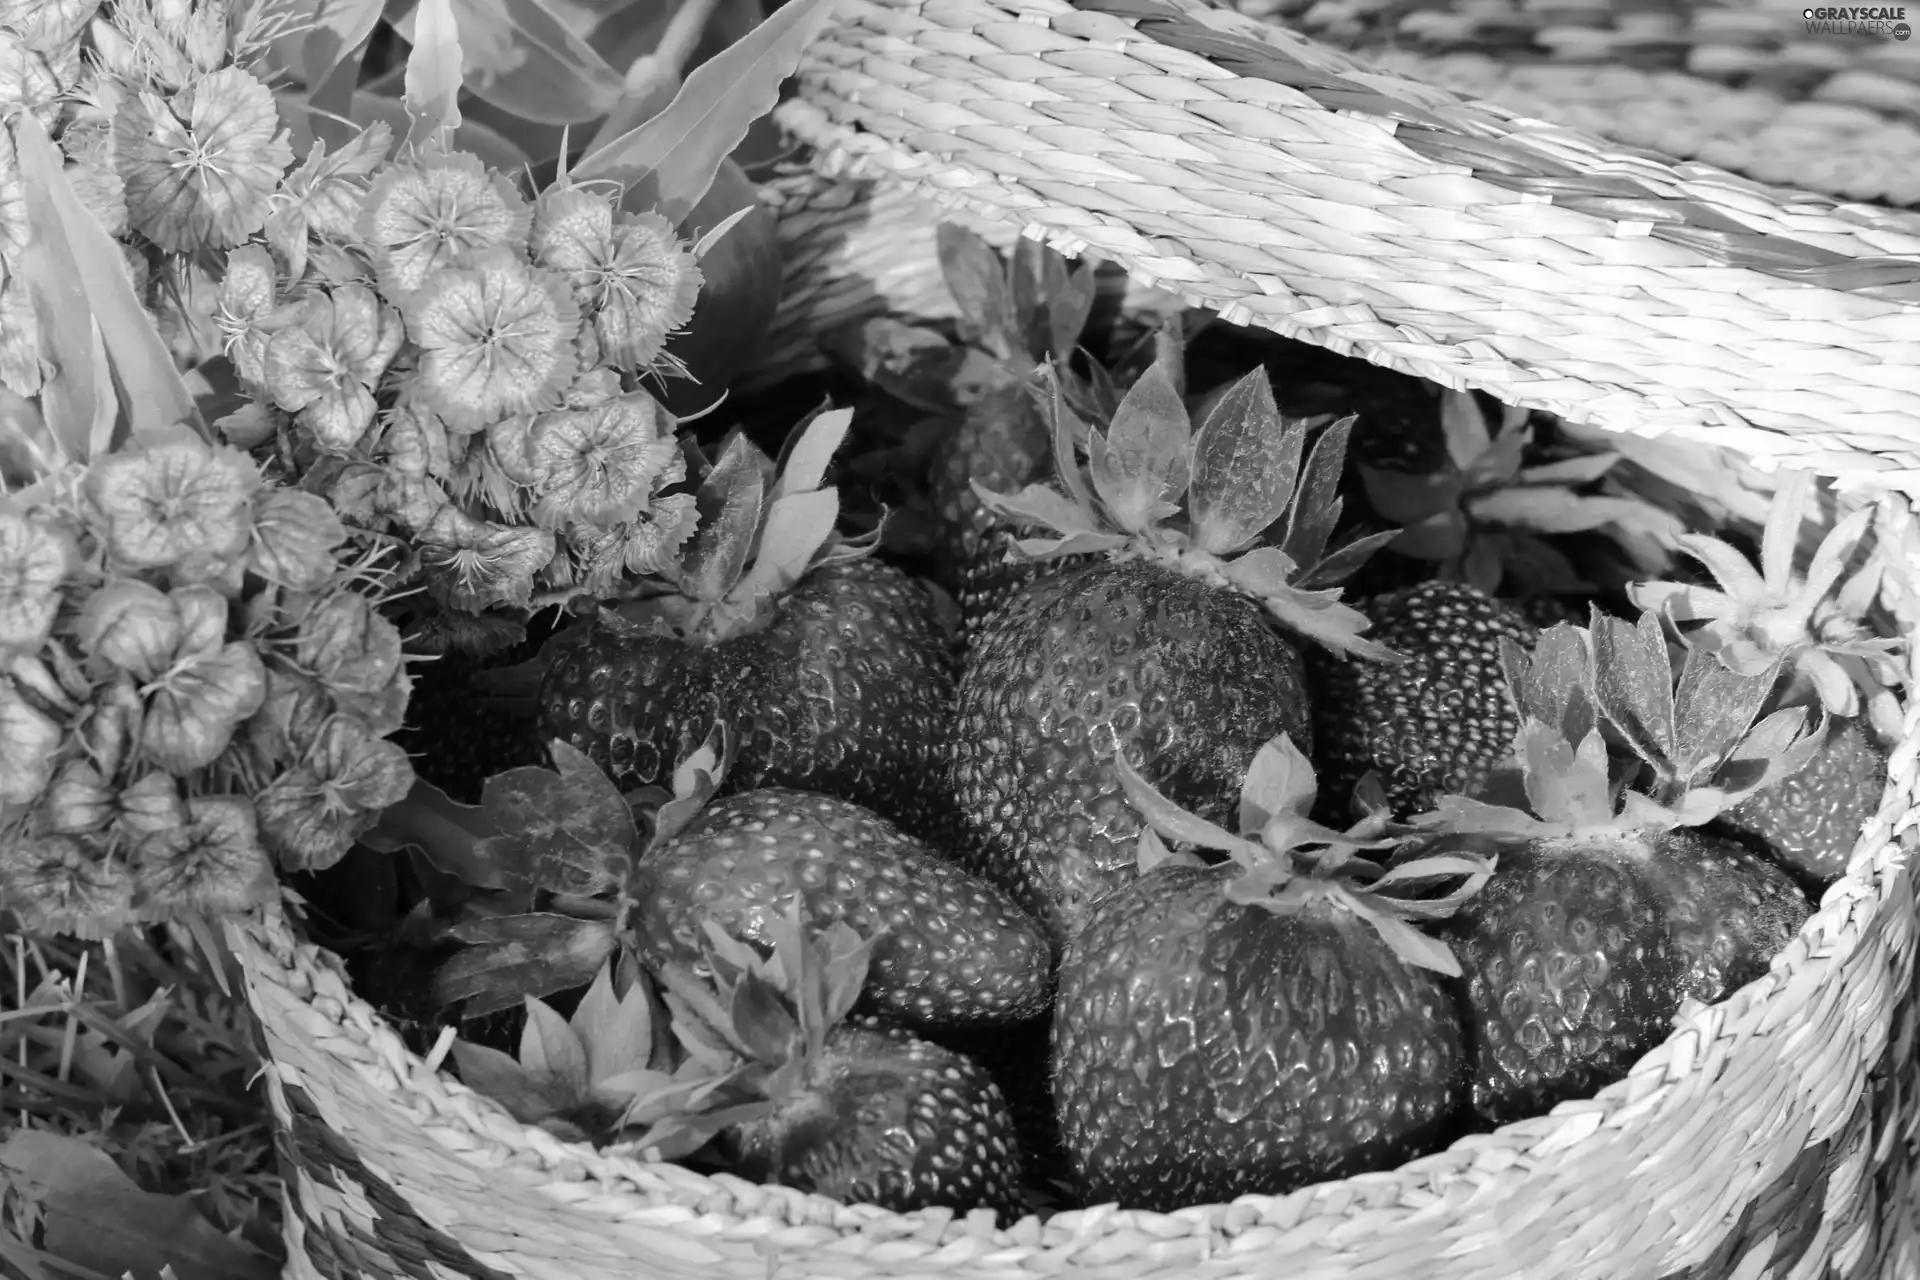 Flowers, strawberries, basket